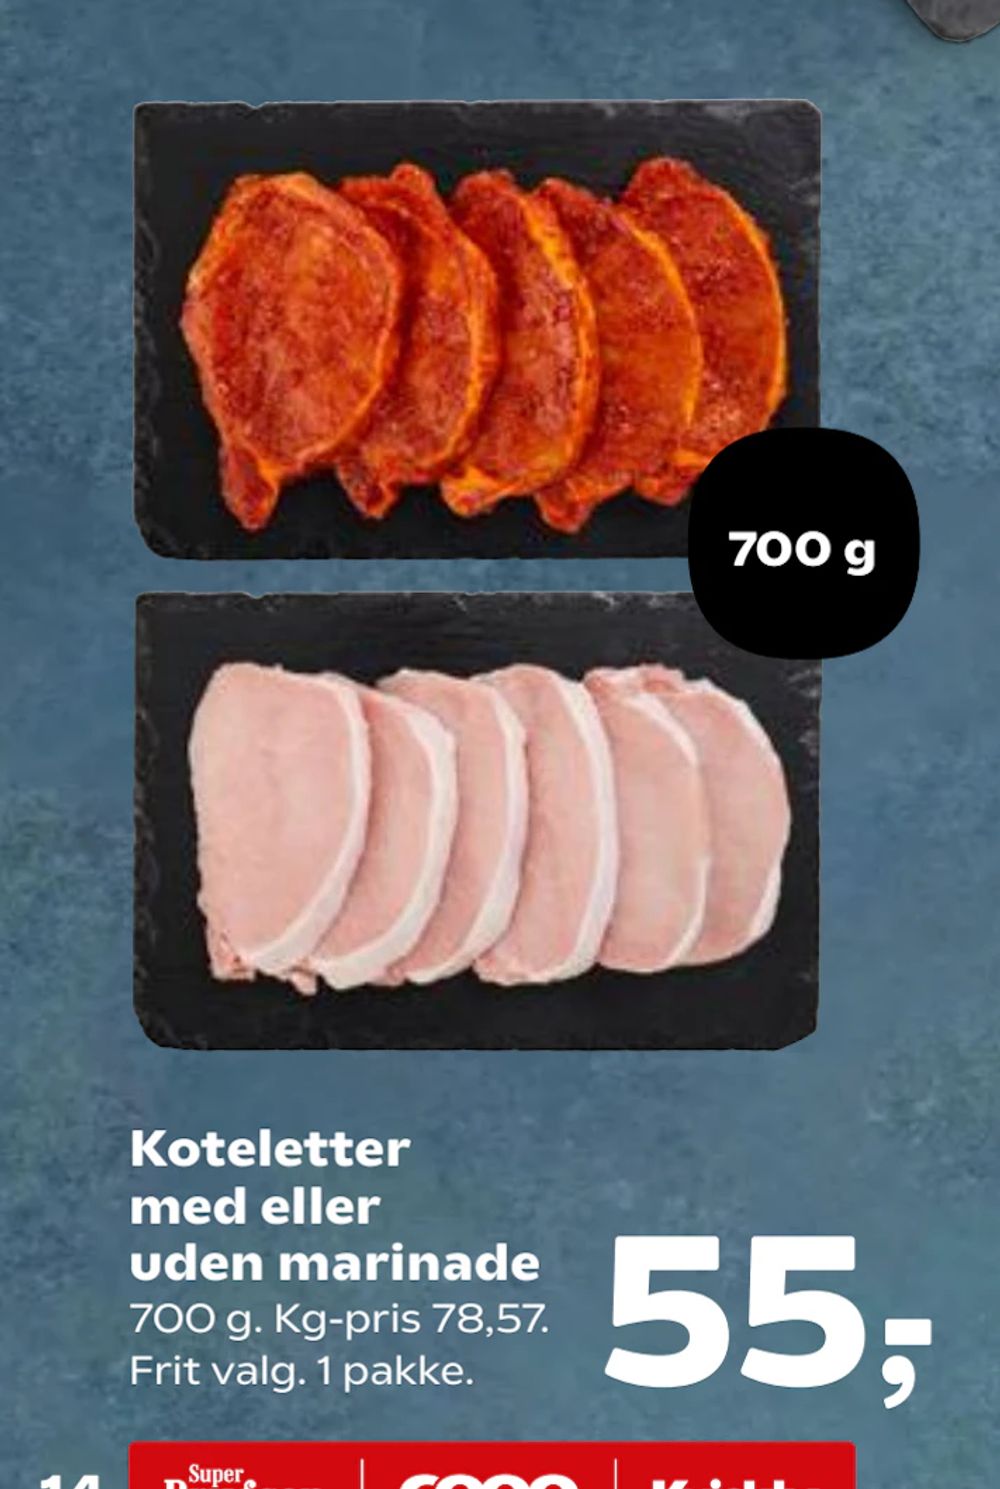 Tilbud på Koteletter med eller uden marinade fra Kvickly til 55 kr.